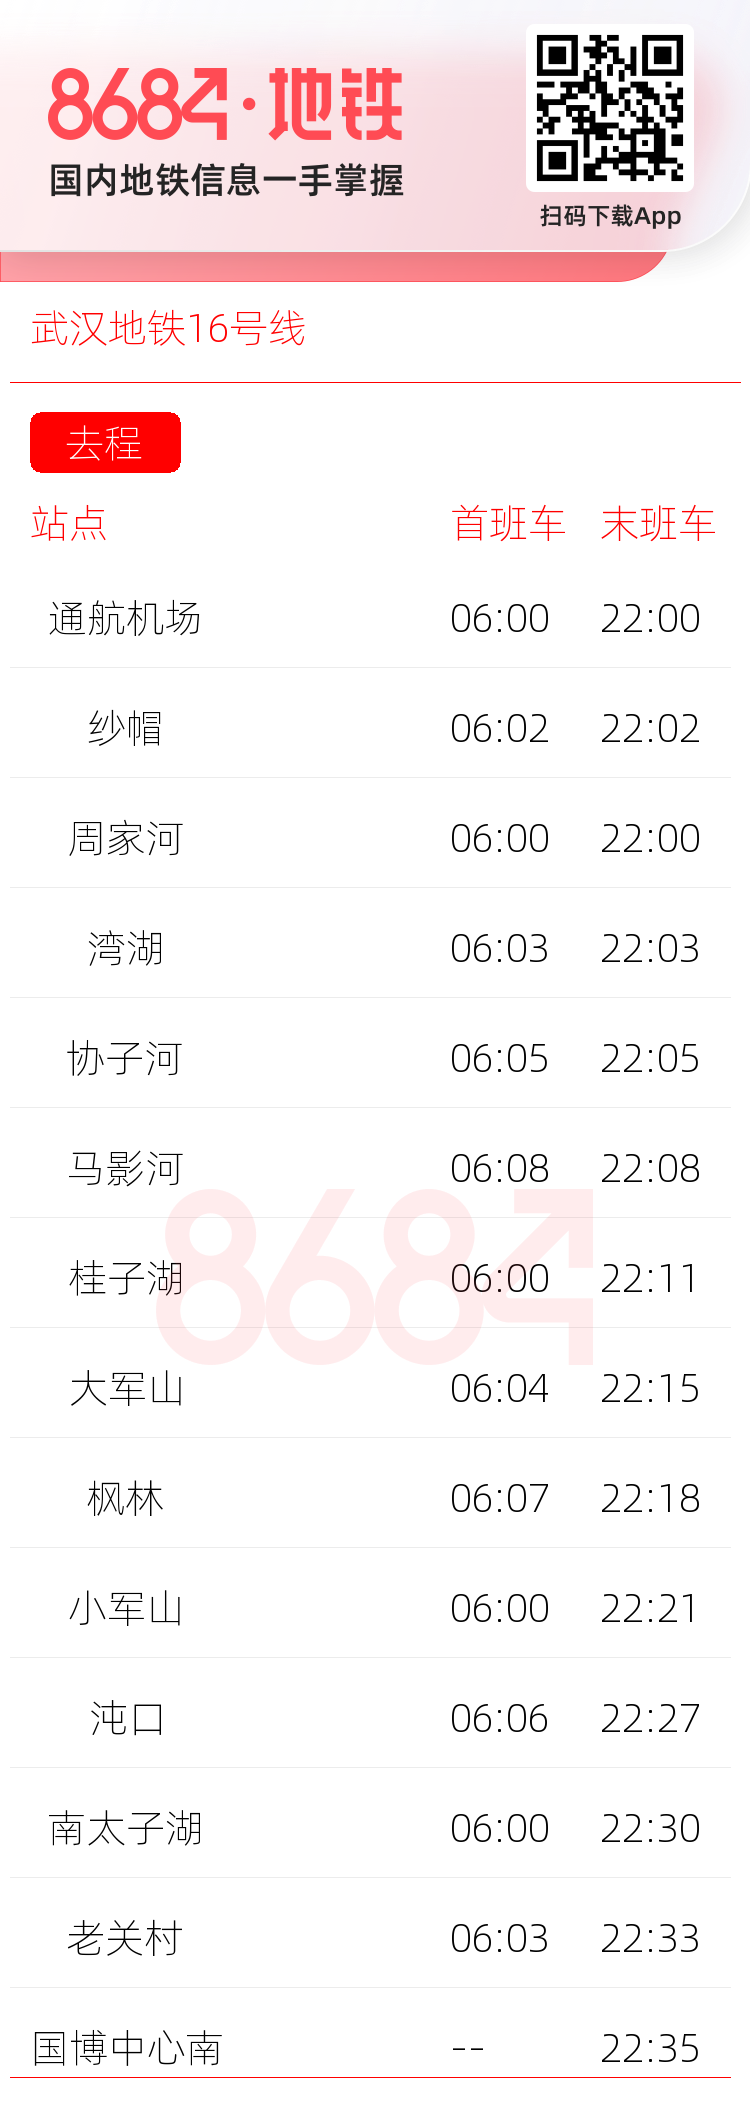 武汉地铁16号线运营时间表